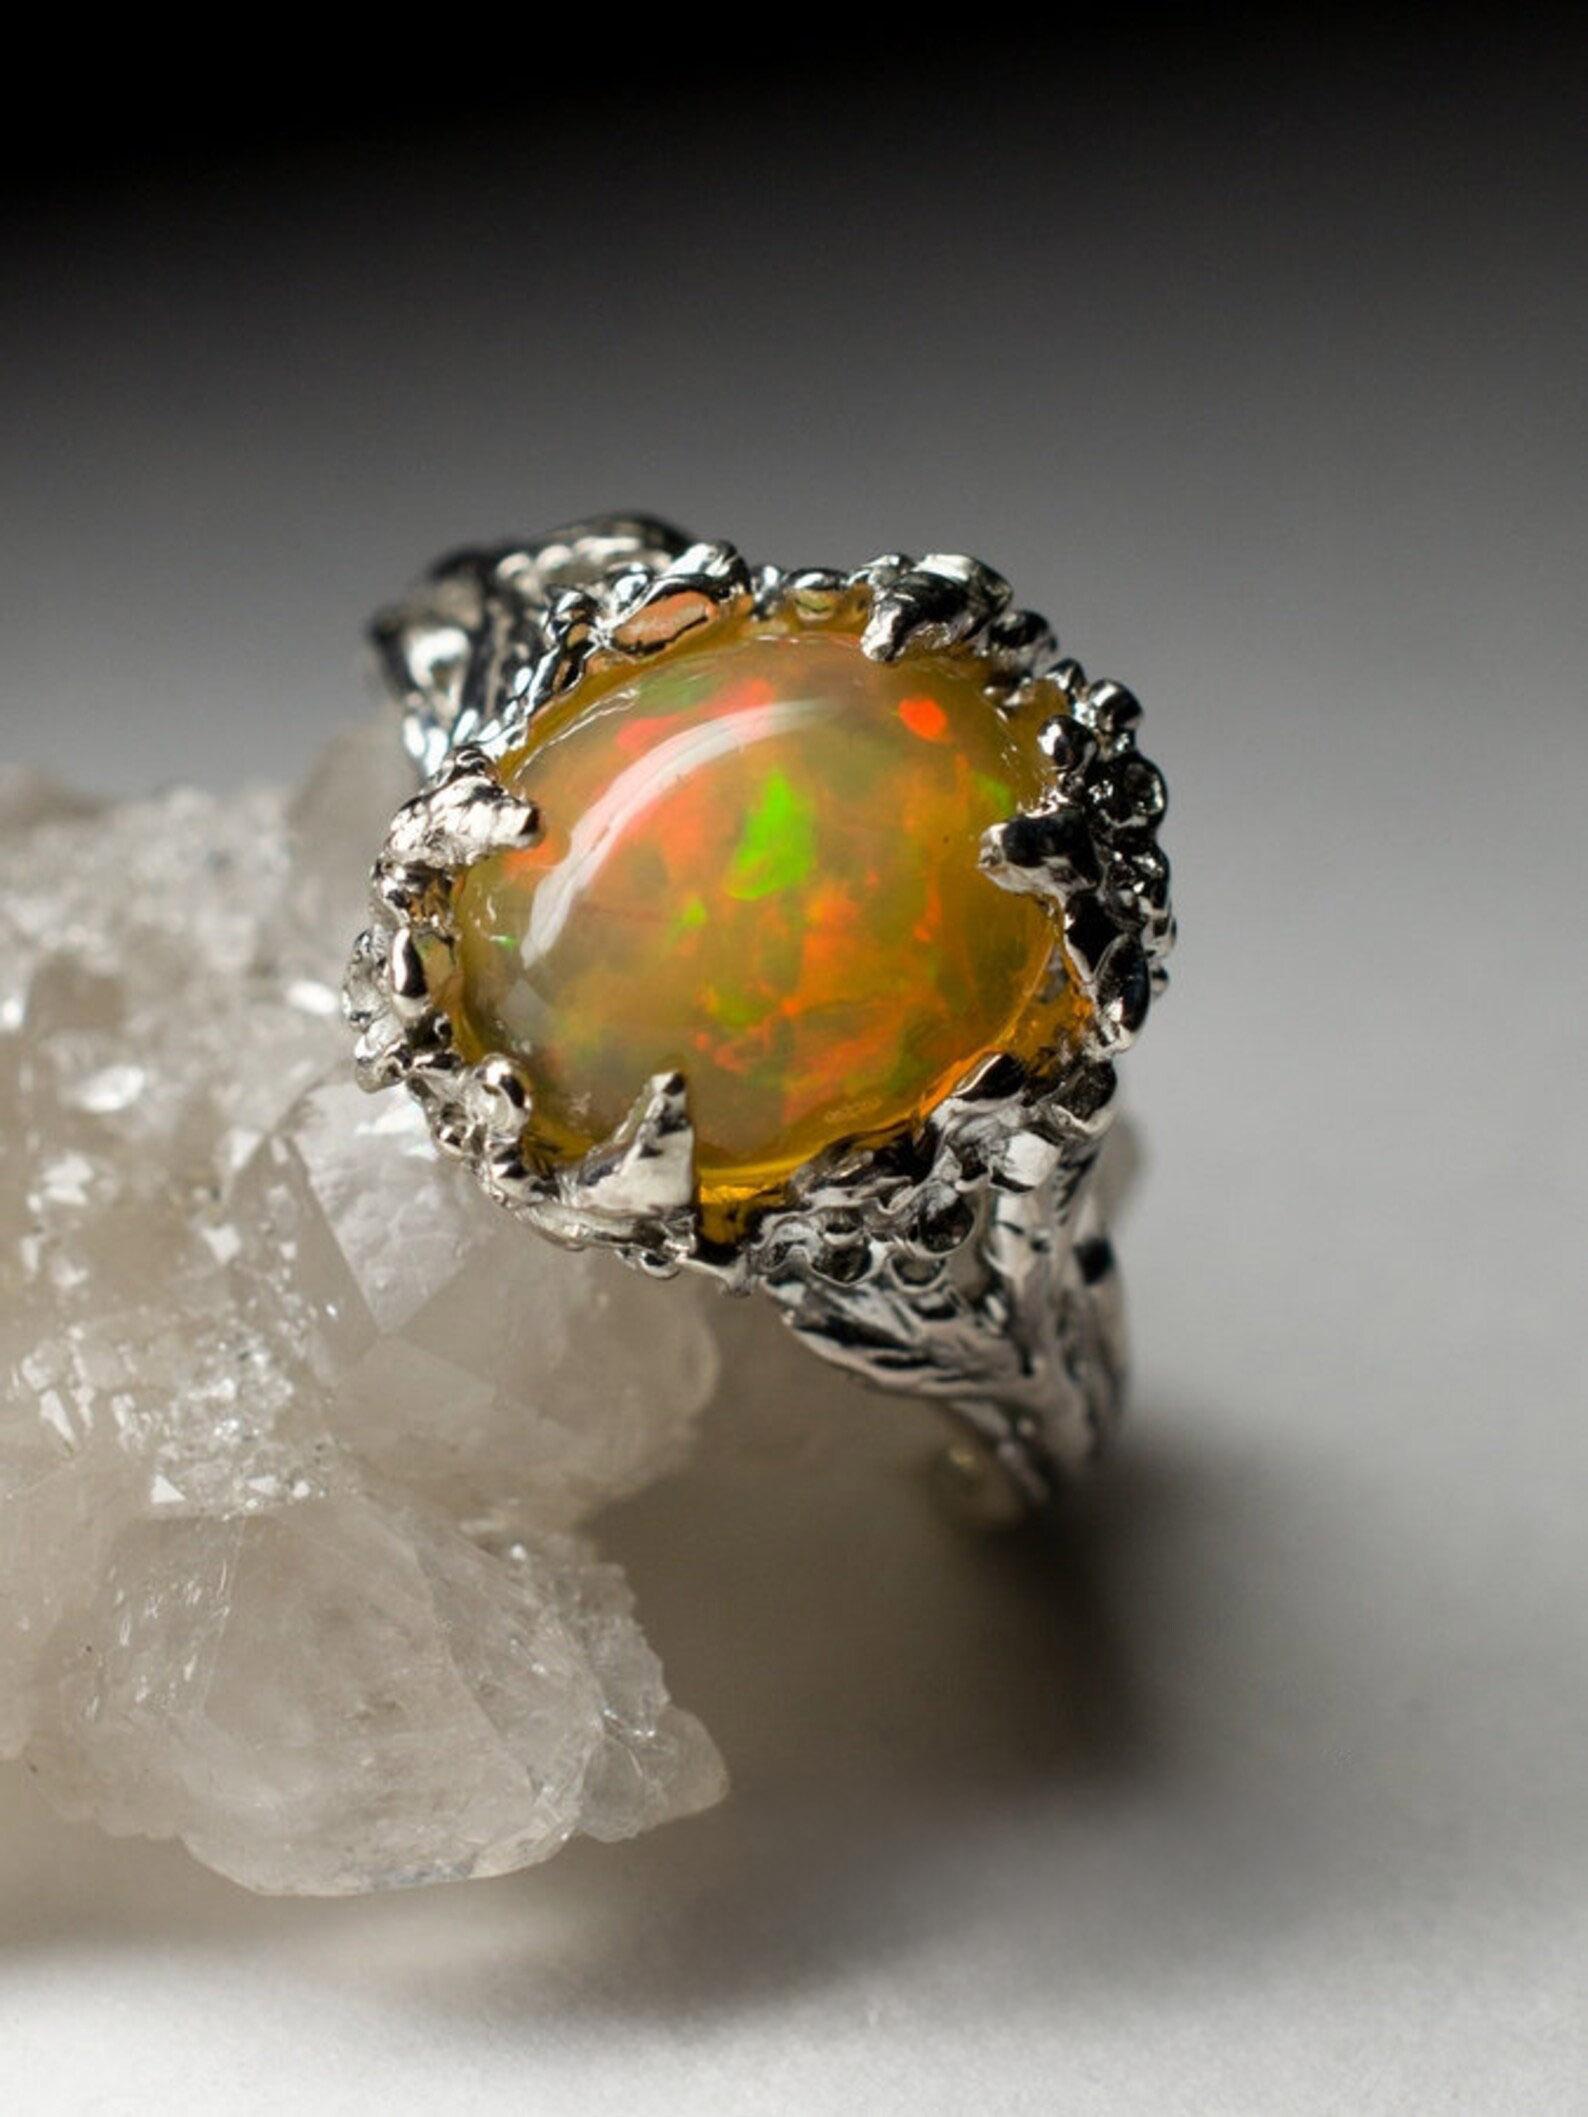 Vintage Silber Opal Ring 
Herkunft der Edelsteine - Äthiopien
Ringgröße - 7.5 US 
Ringgewicht - 4.72 Gramm
Die Größe der Edelsteine ist 0,28 x 0,51 x 0,59 in / 7 х 13 х 15 mm